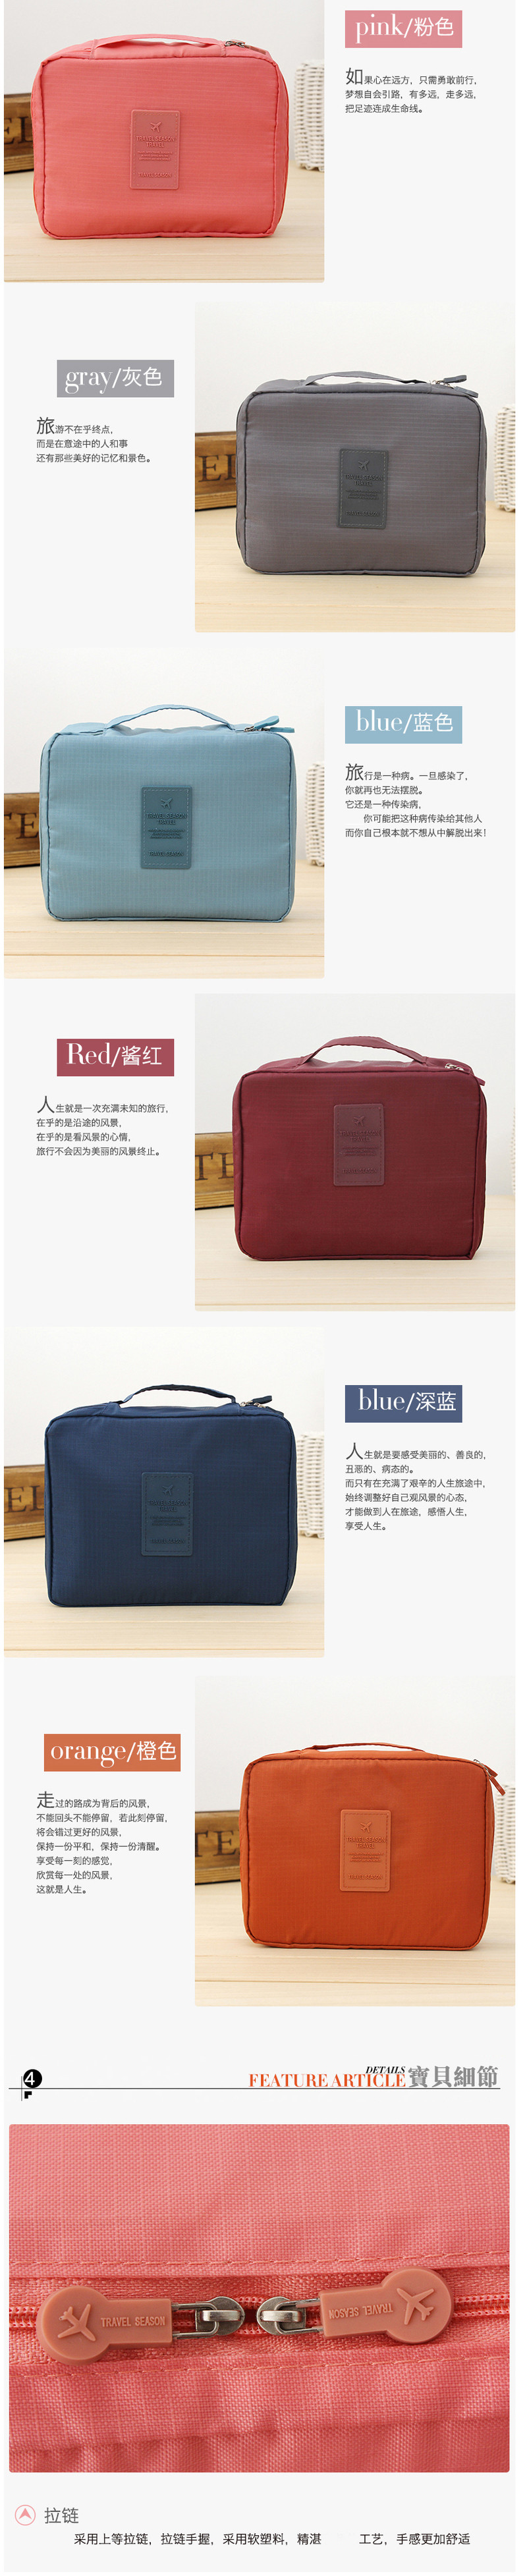 韩版方形旅行多功能内衣收纳包 旅行包 便携洗漱多色随机